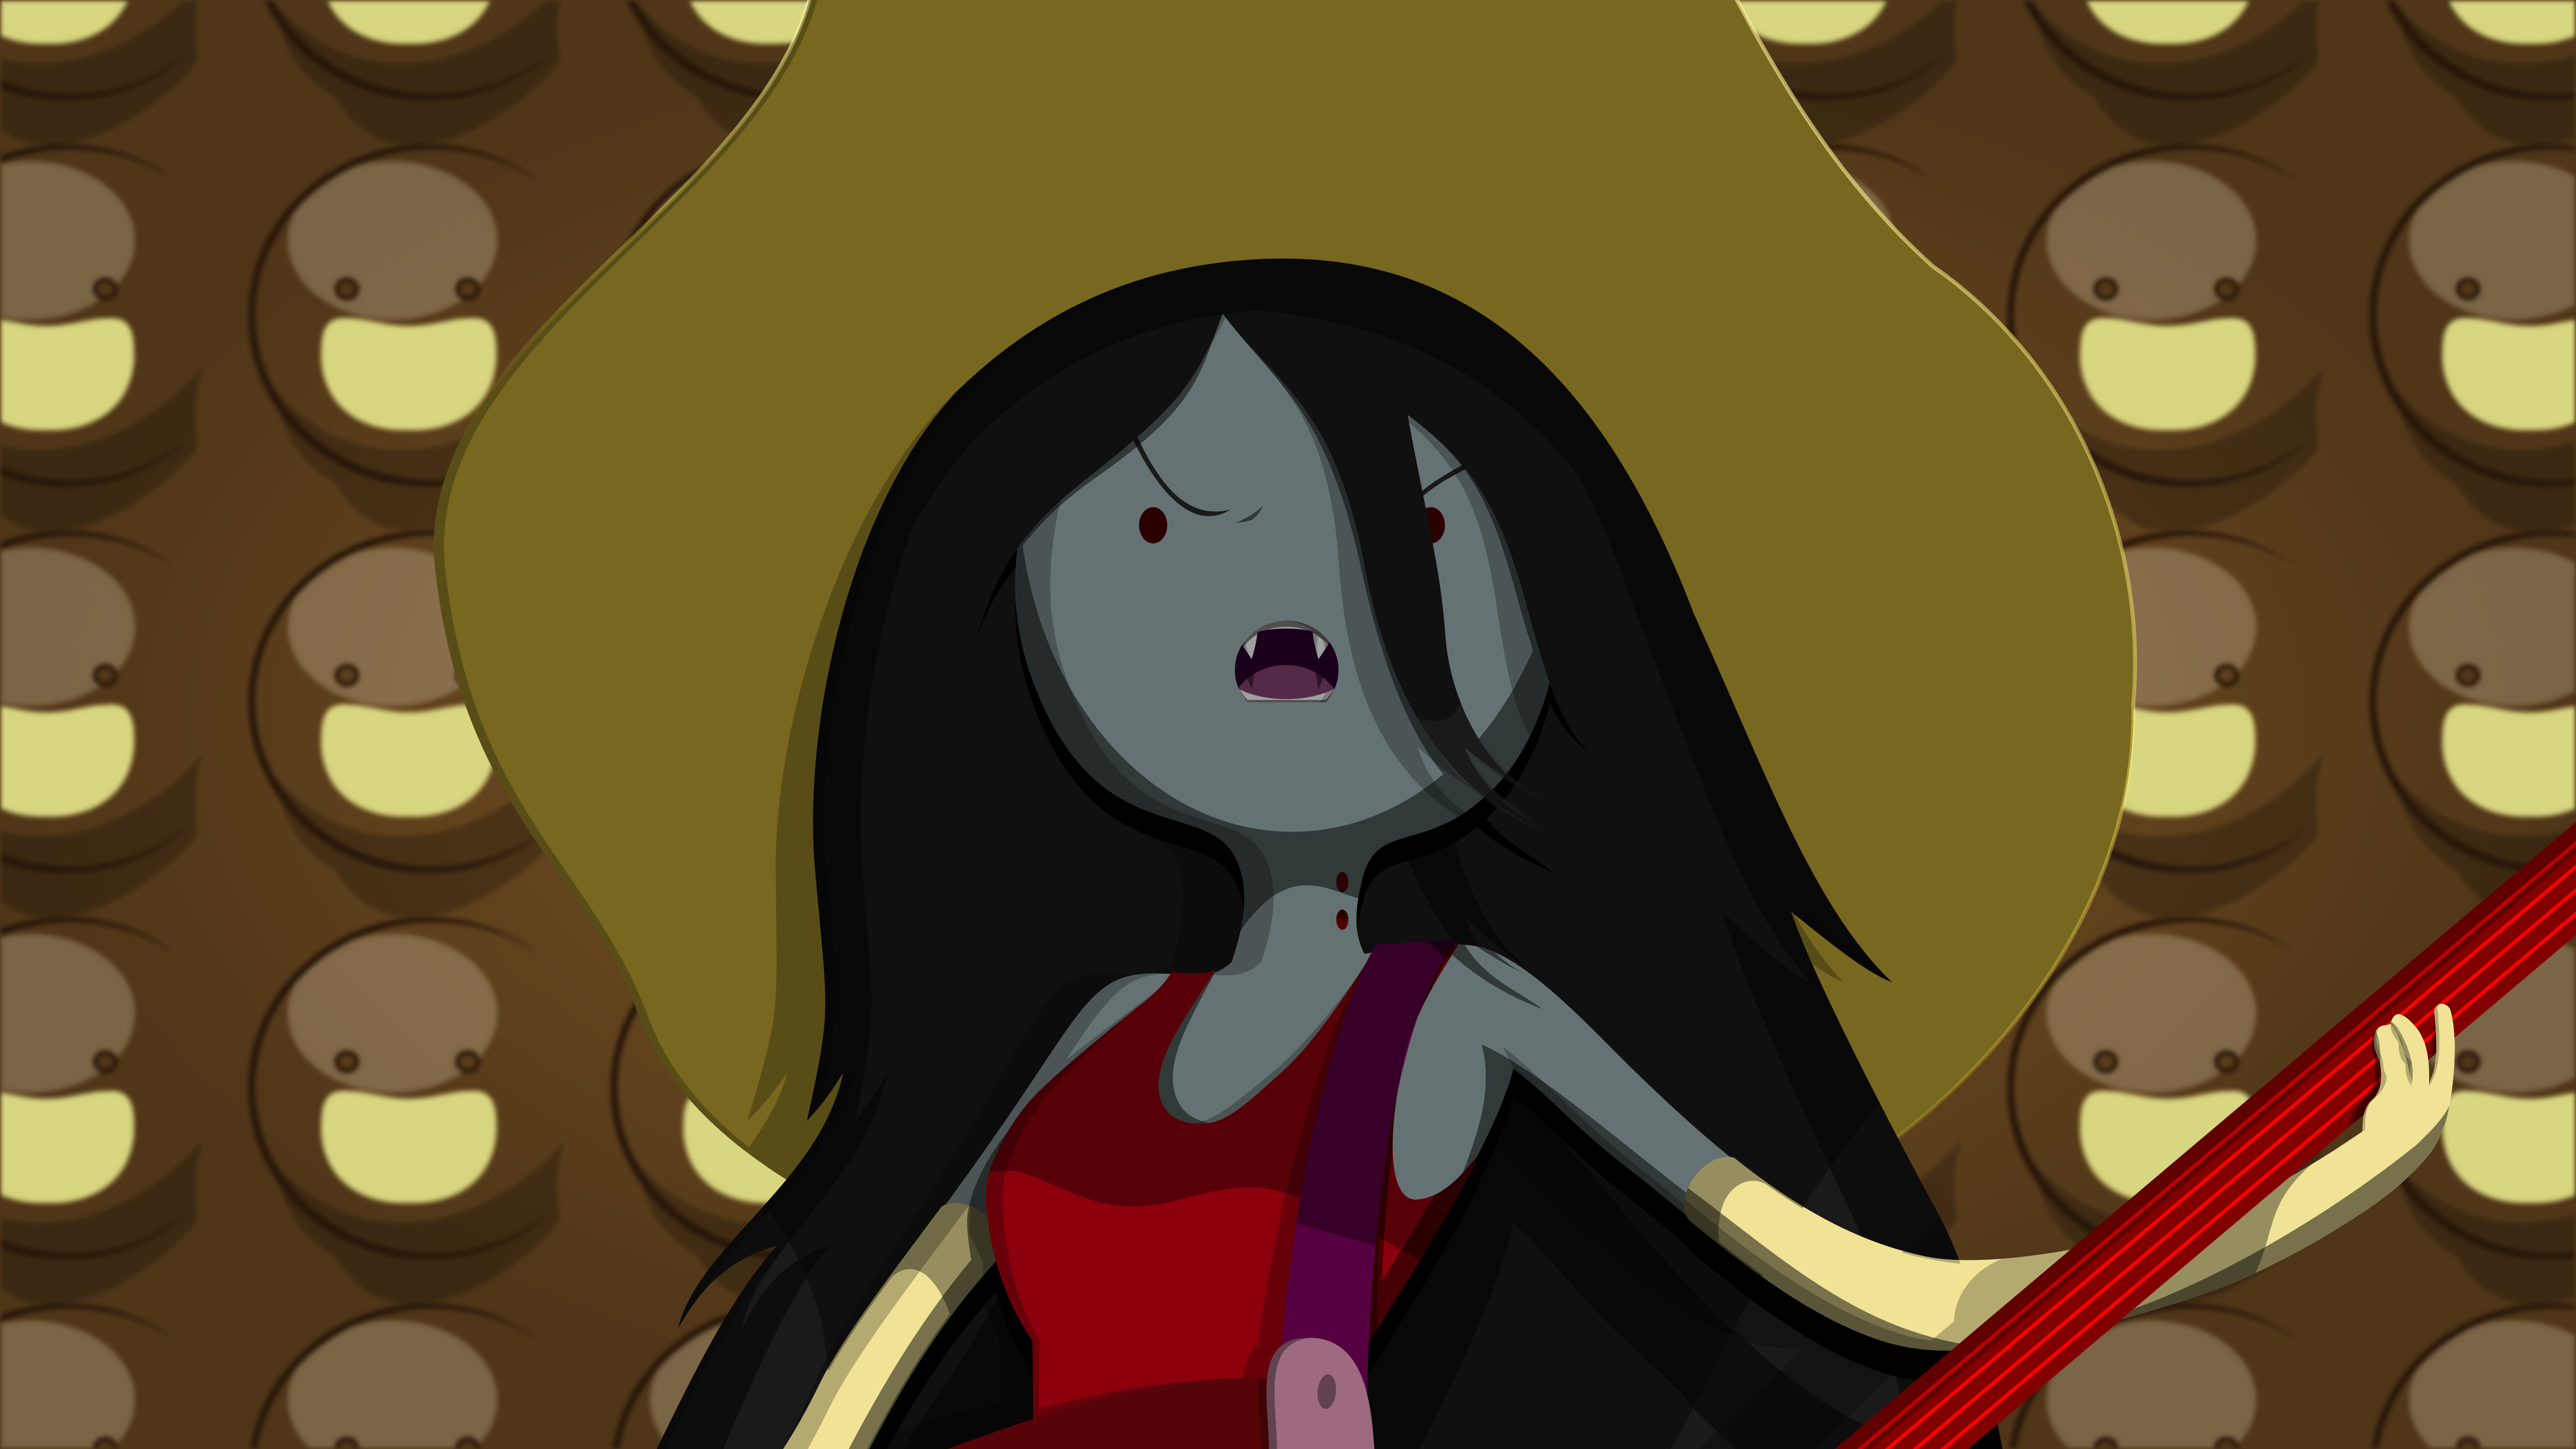 General 5000x2812 Adventure Time Marceline the vampire queen video games vampires TV series